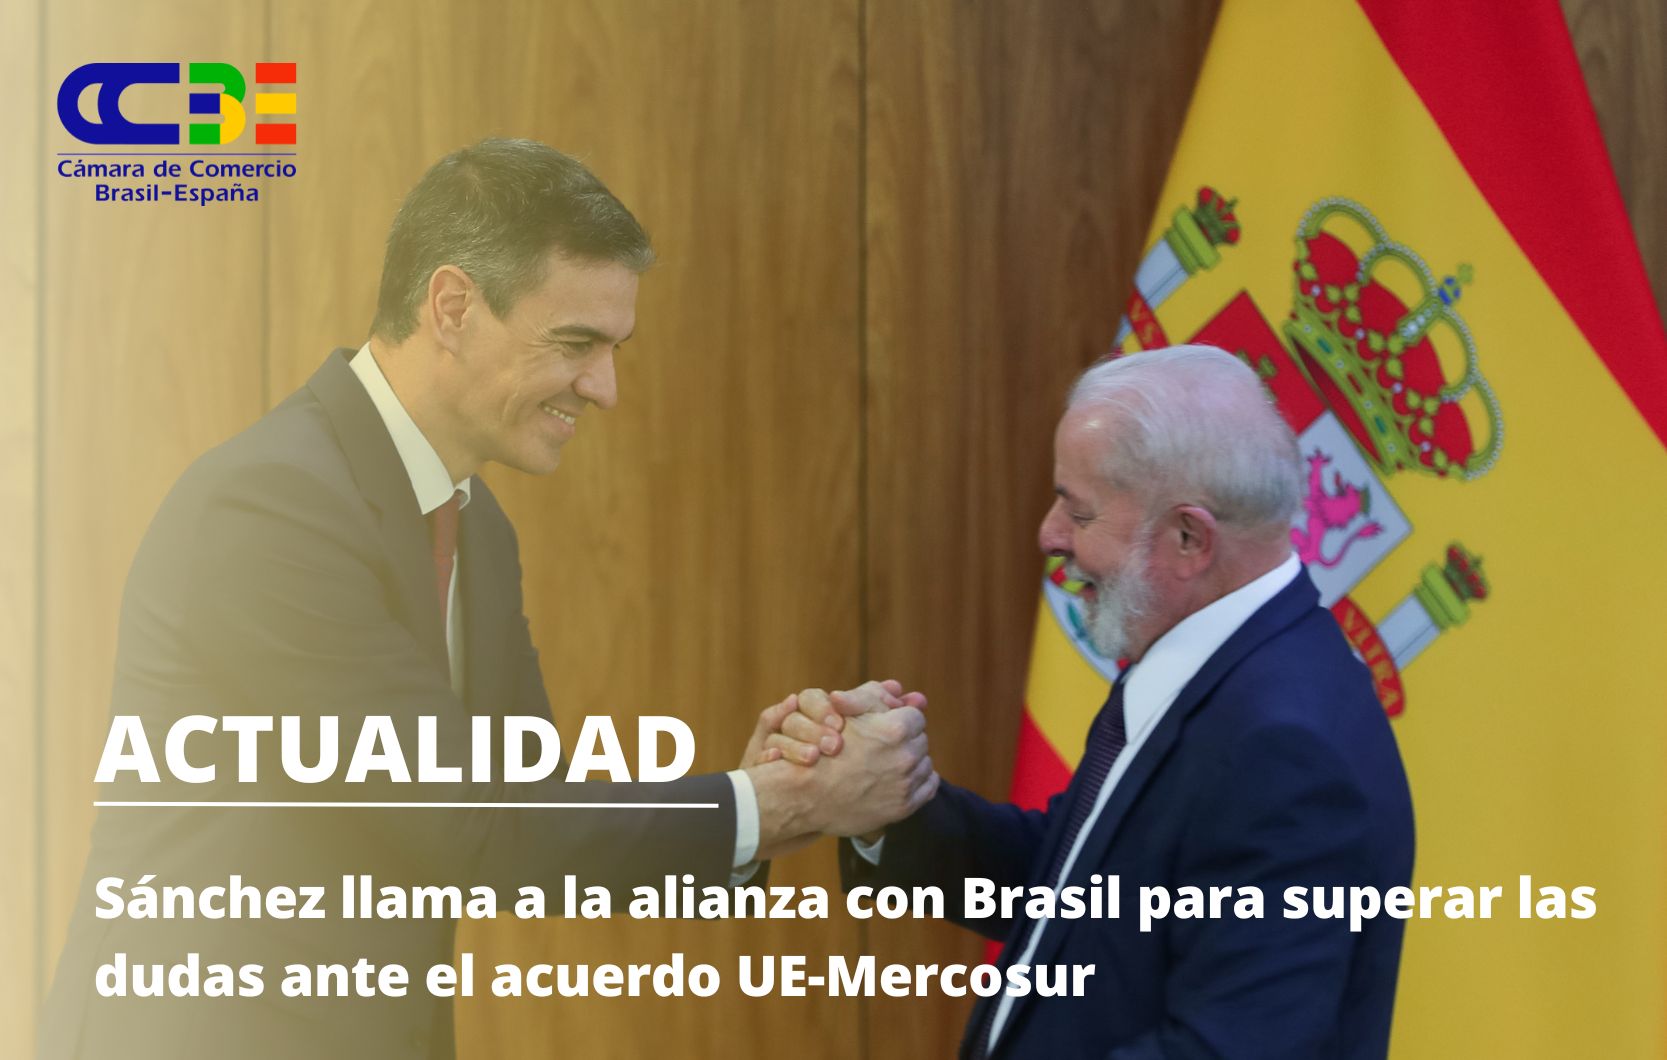 Sánchez llama a la alianza con Brasil para superar las dudas ante el acuerdo UE-Mercosur